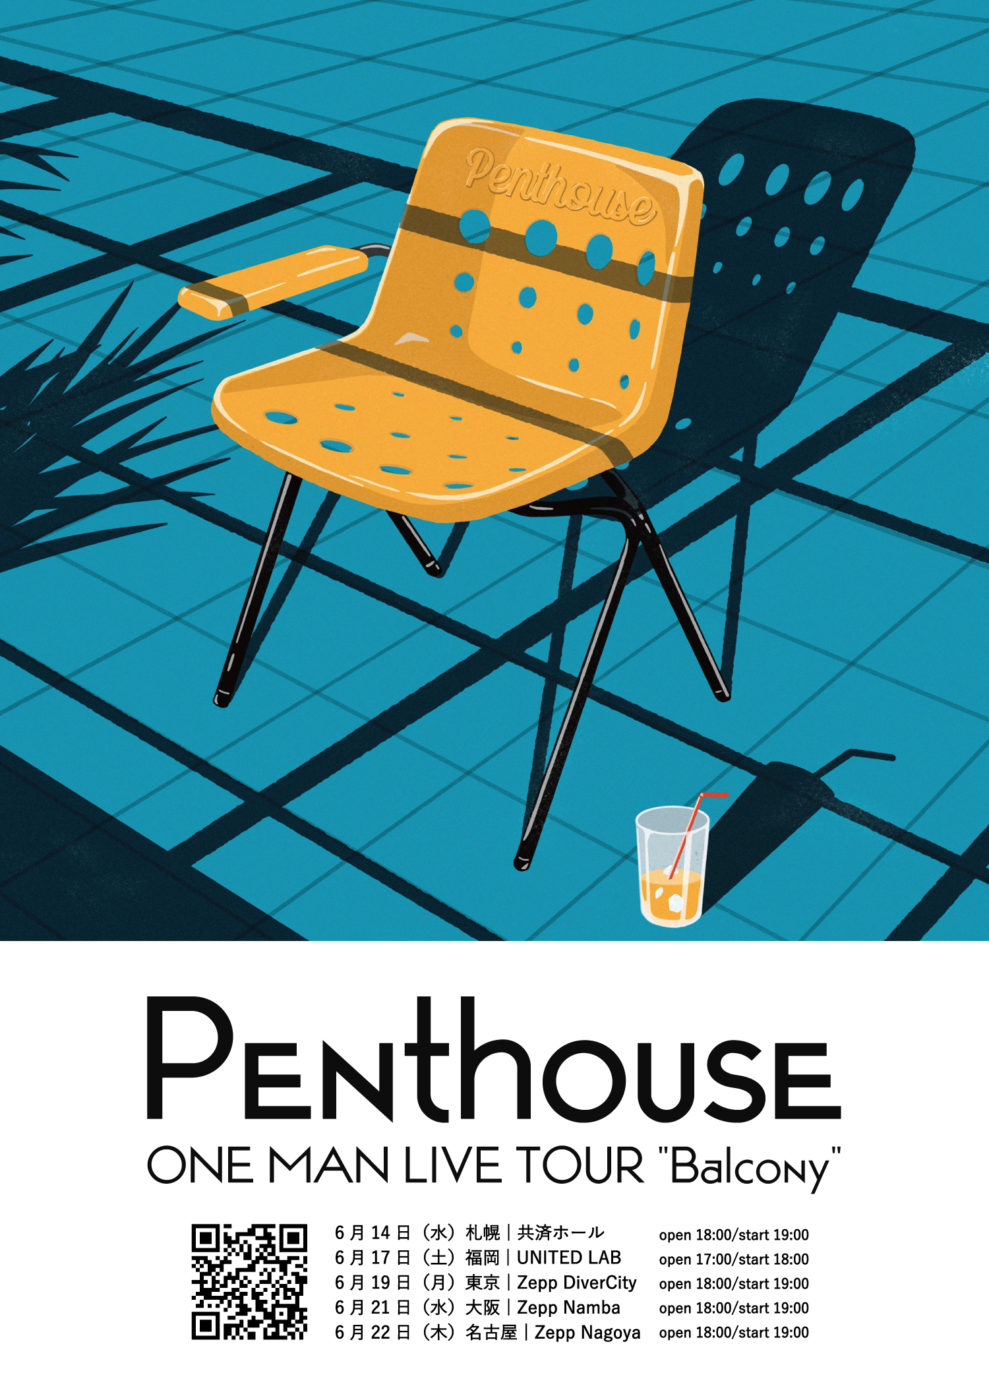 6月14日(水) Penthouse ONE MAN LIVE TOUR “Balcony” 札幌・共済ホール